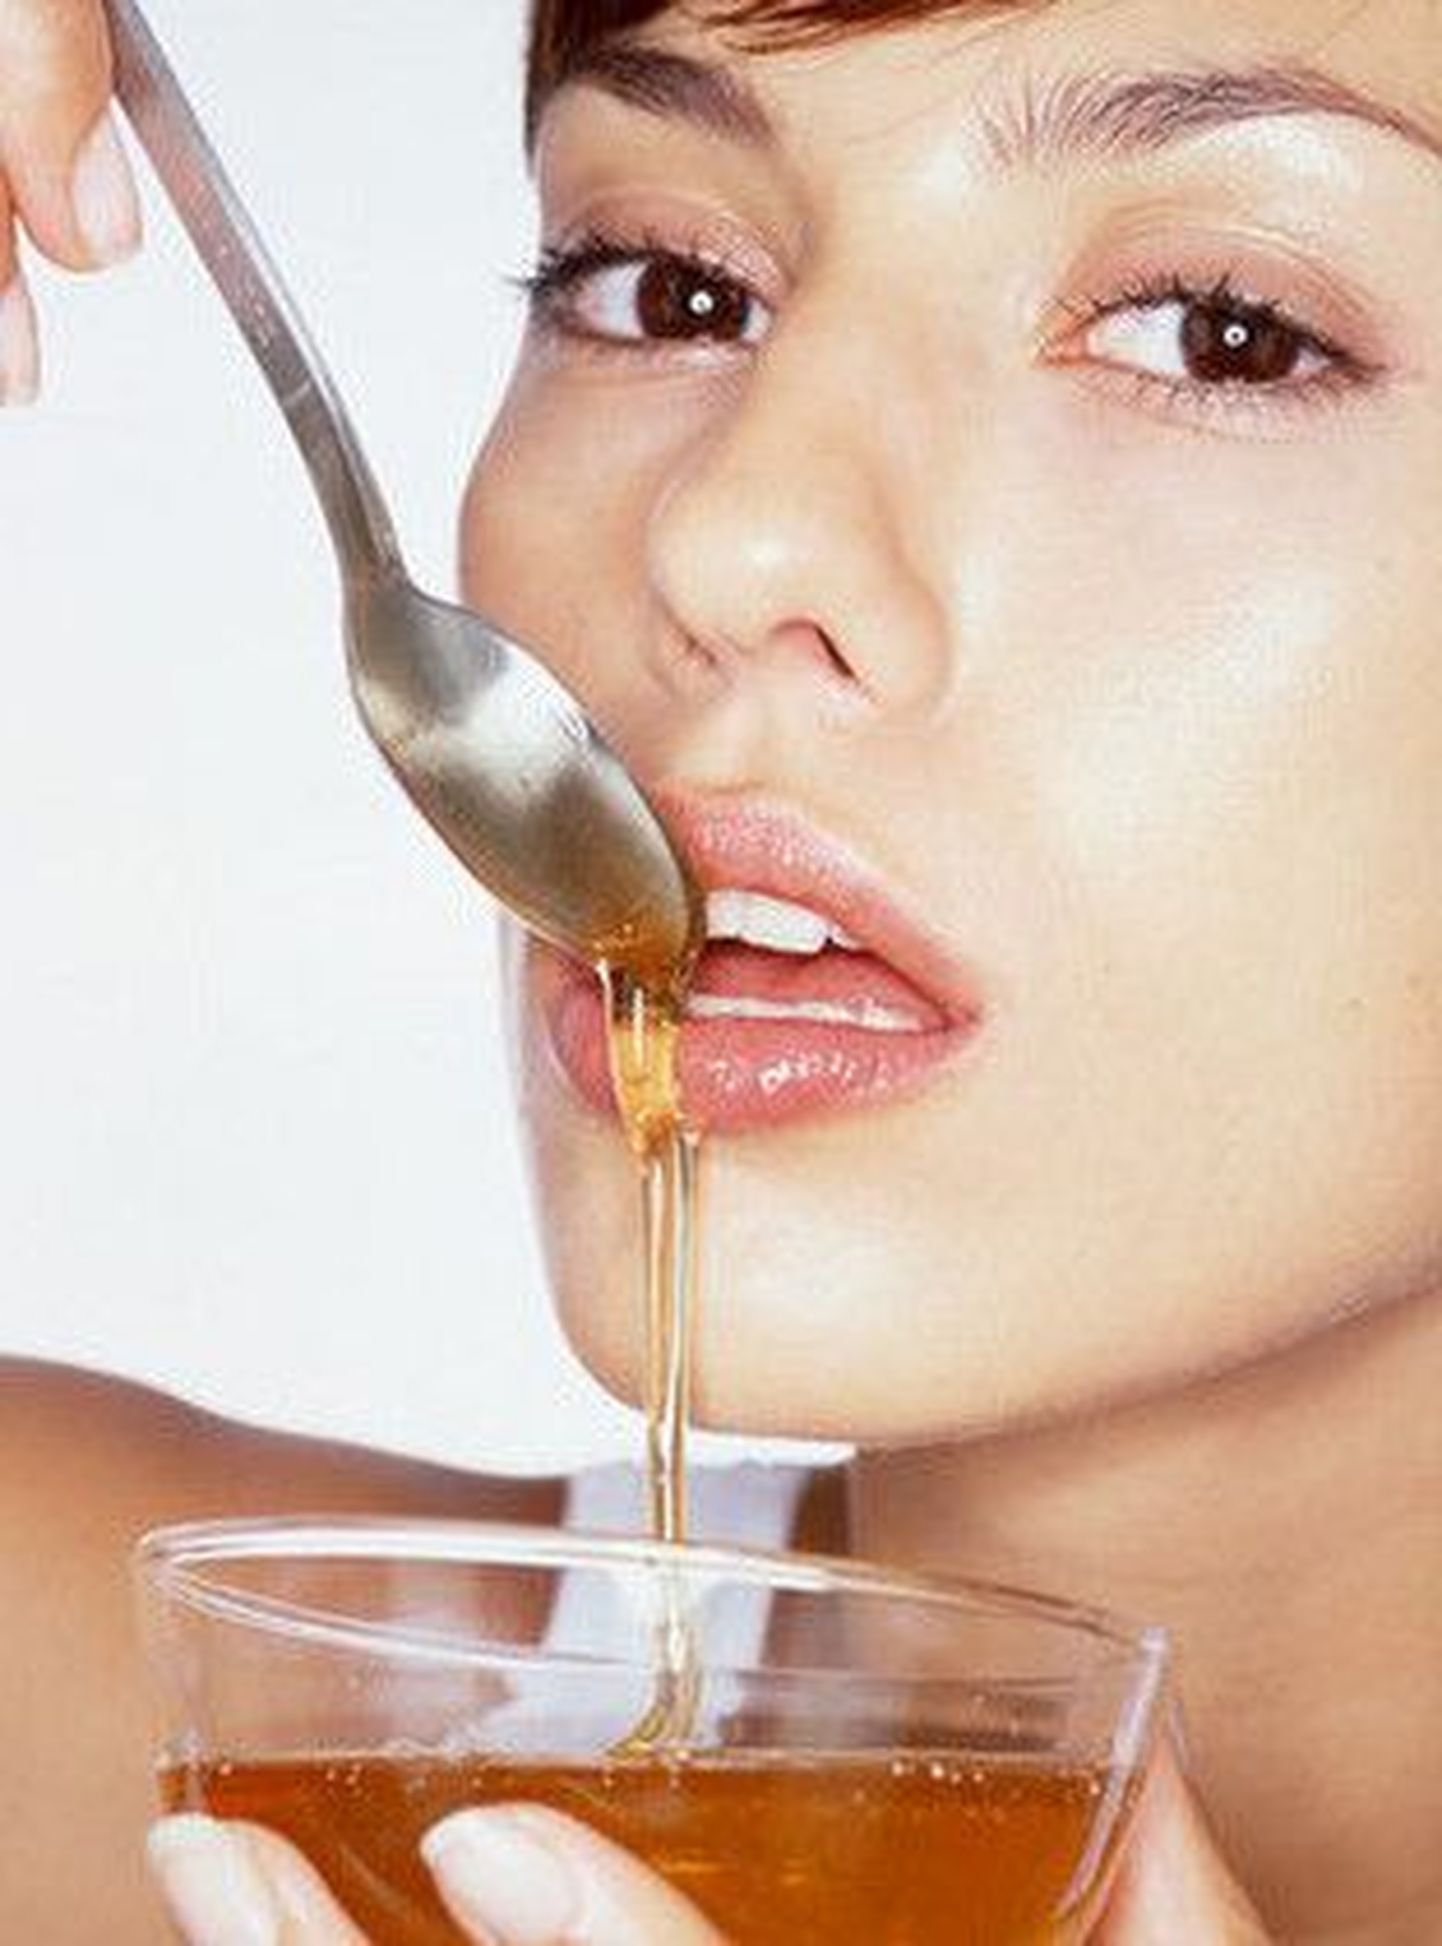 Мёд повышает уровень тестостерона в крови благодаря присутствующему в нём бору.